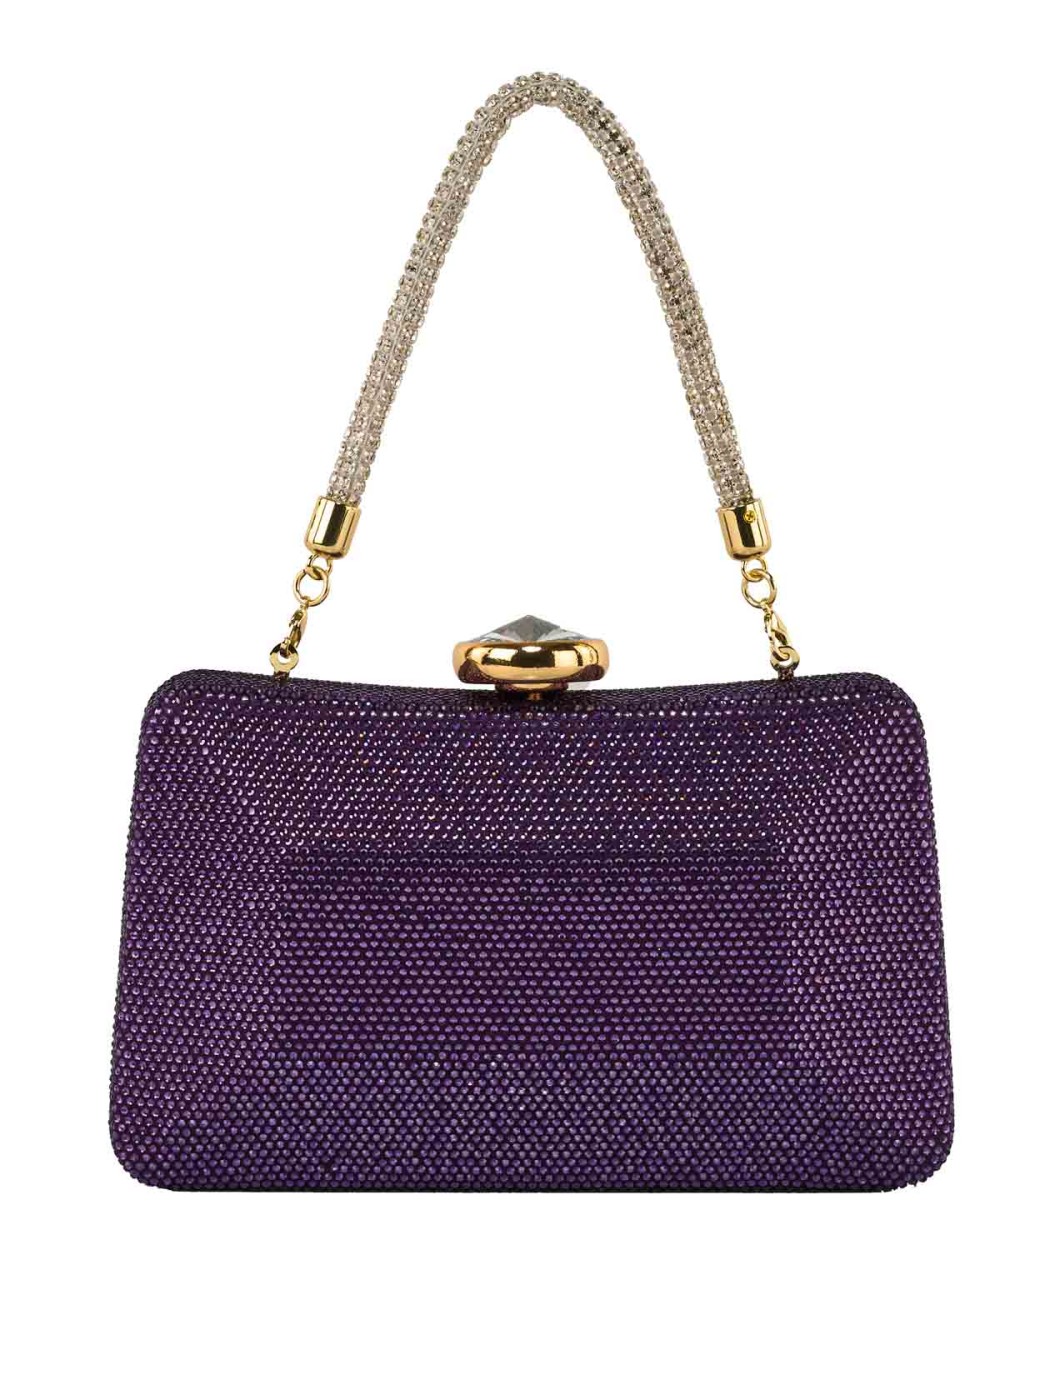 Anna Cecere purple purse...